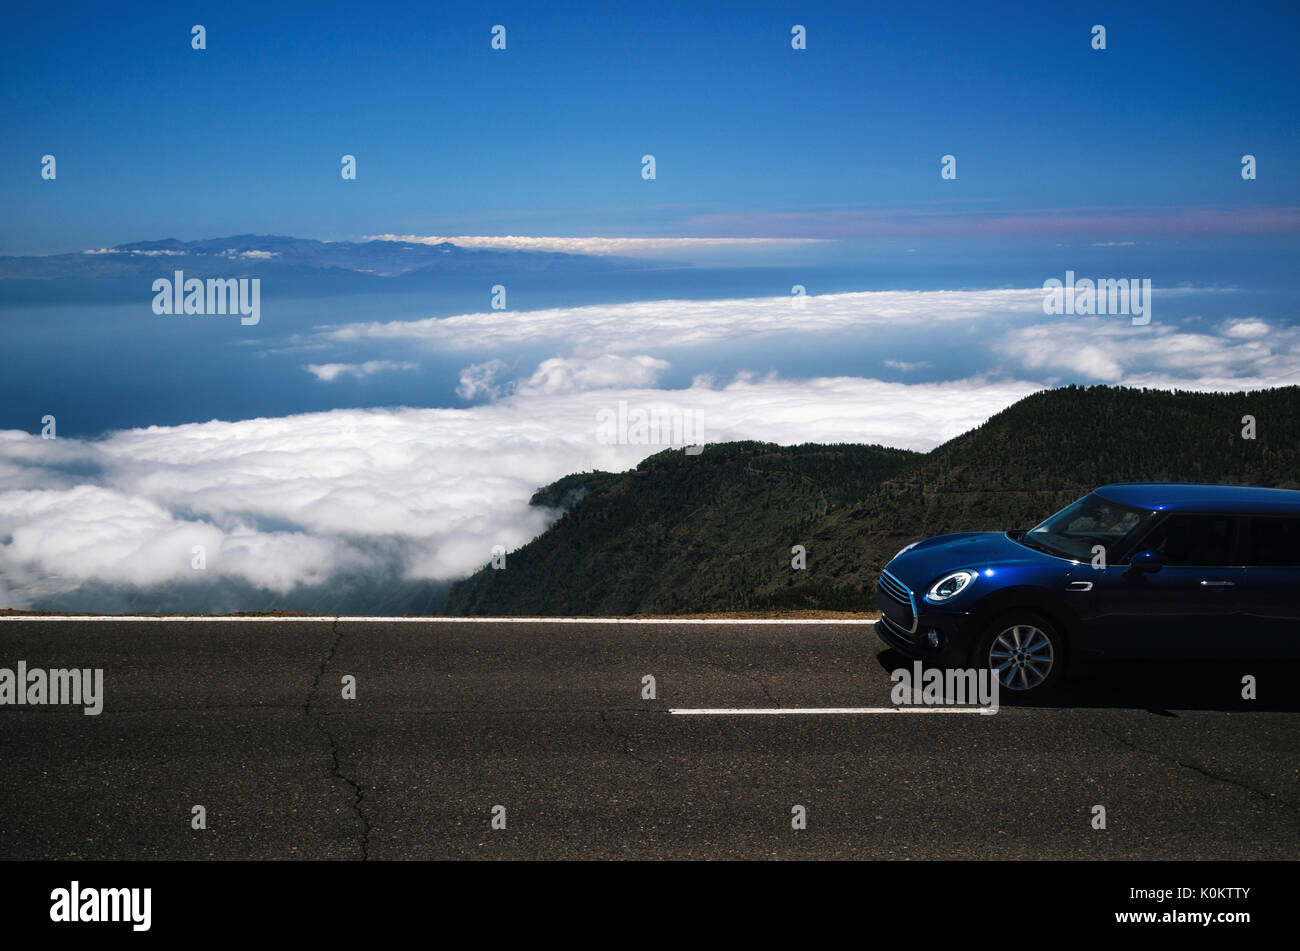 Dark viaggio in auto sulla serpentina di montagna sopra le nuvole lungo il precipizio di Tenerife contro il cielo. Roadtrip intorno alle isole Canarie Foto Stock